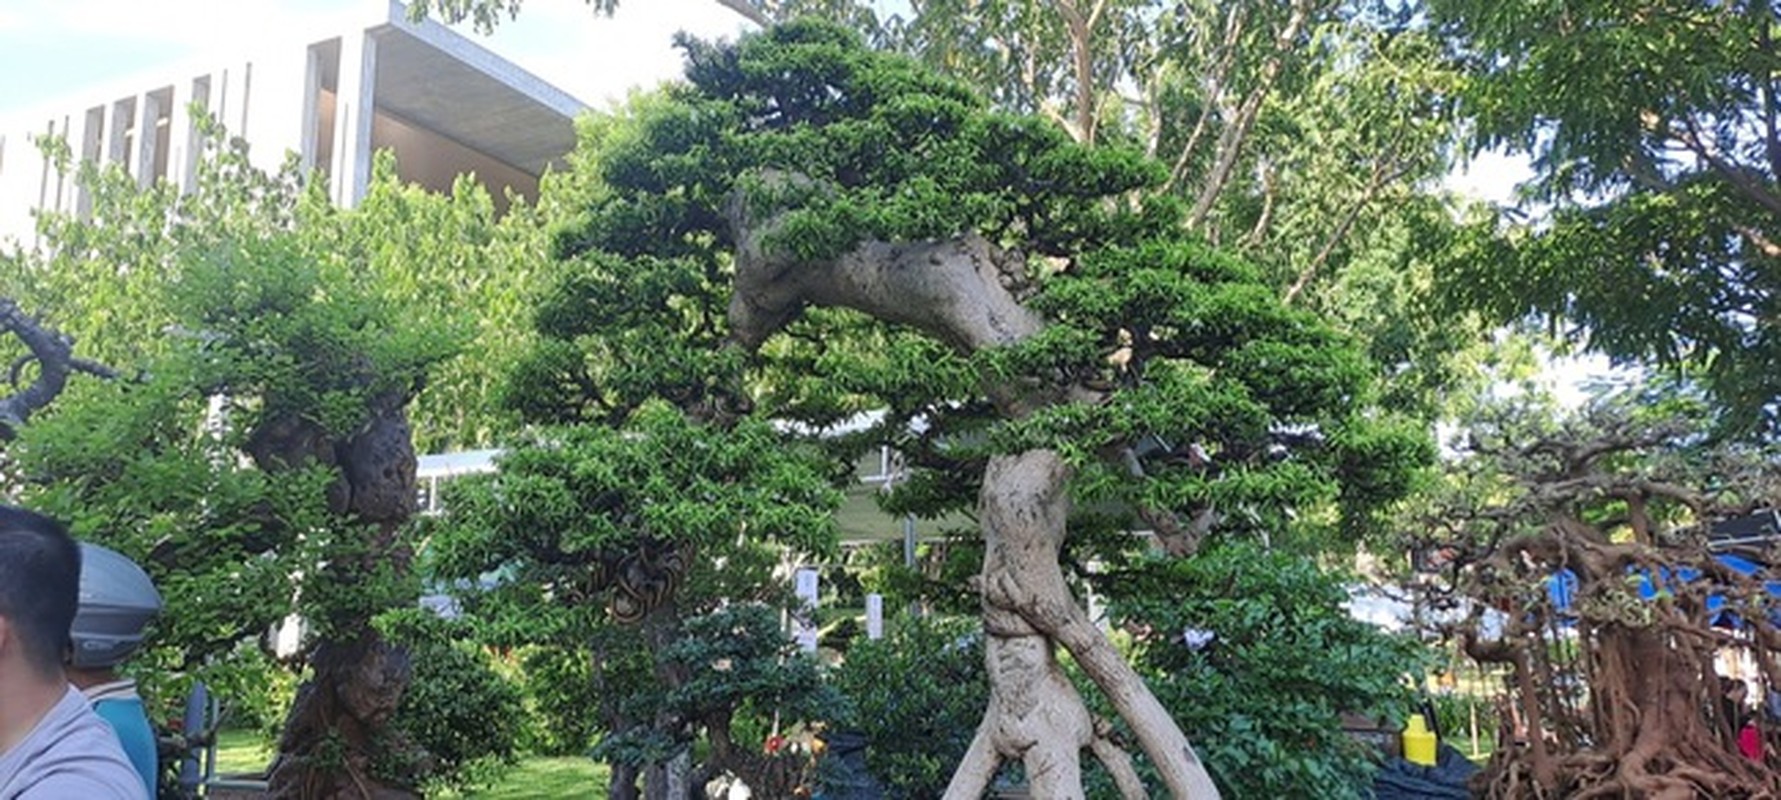 Chiem nguong dan “quai cay” bonsai it nguoi dam hoi gia